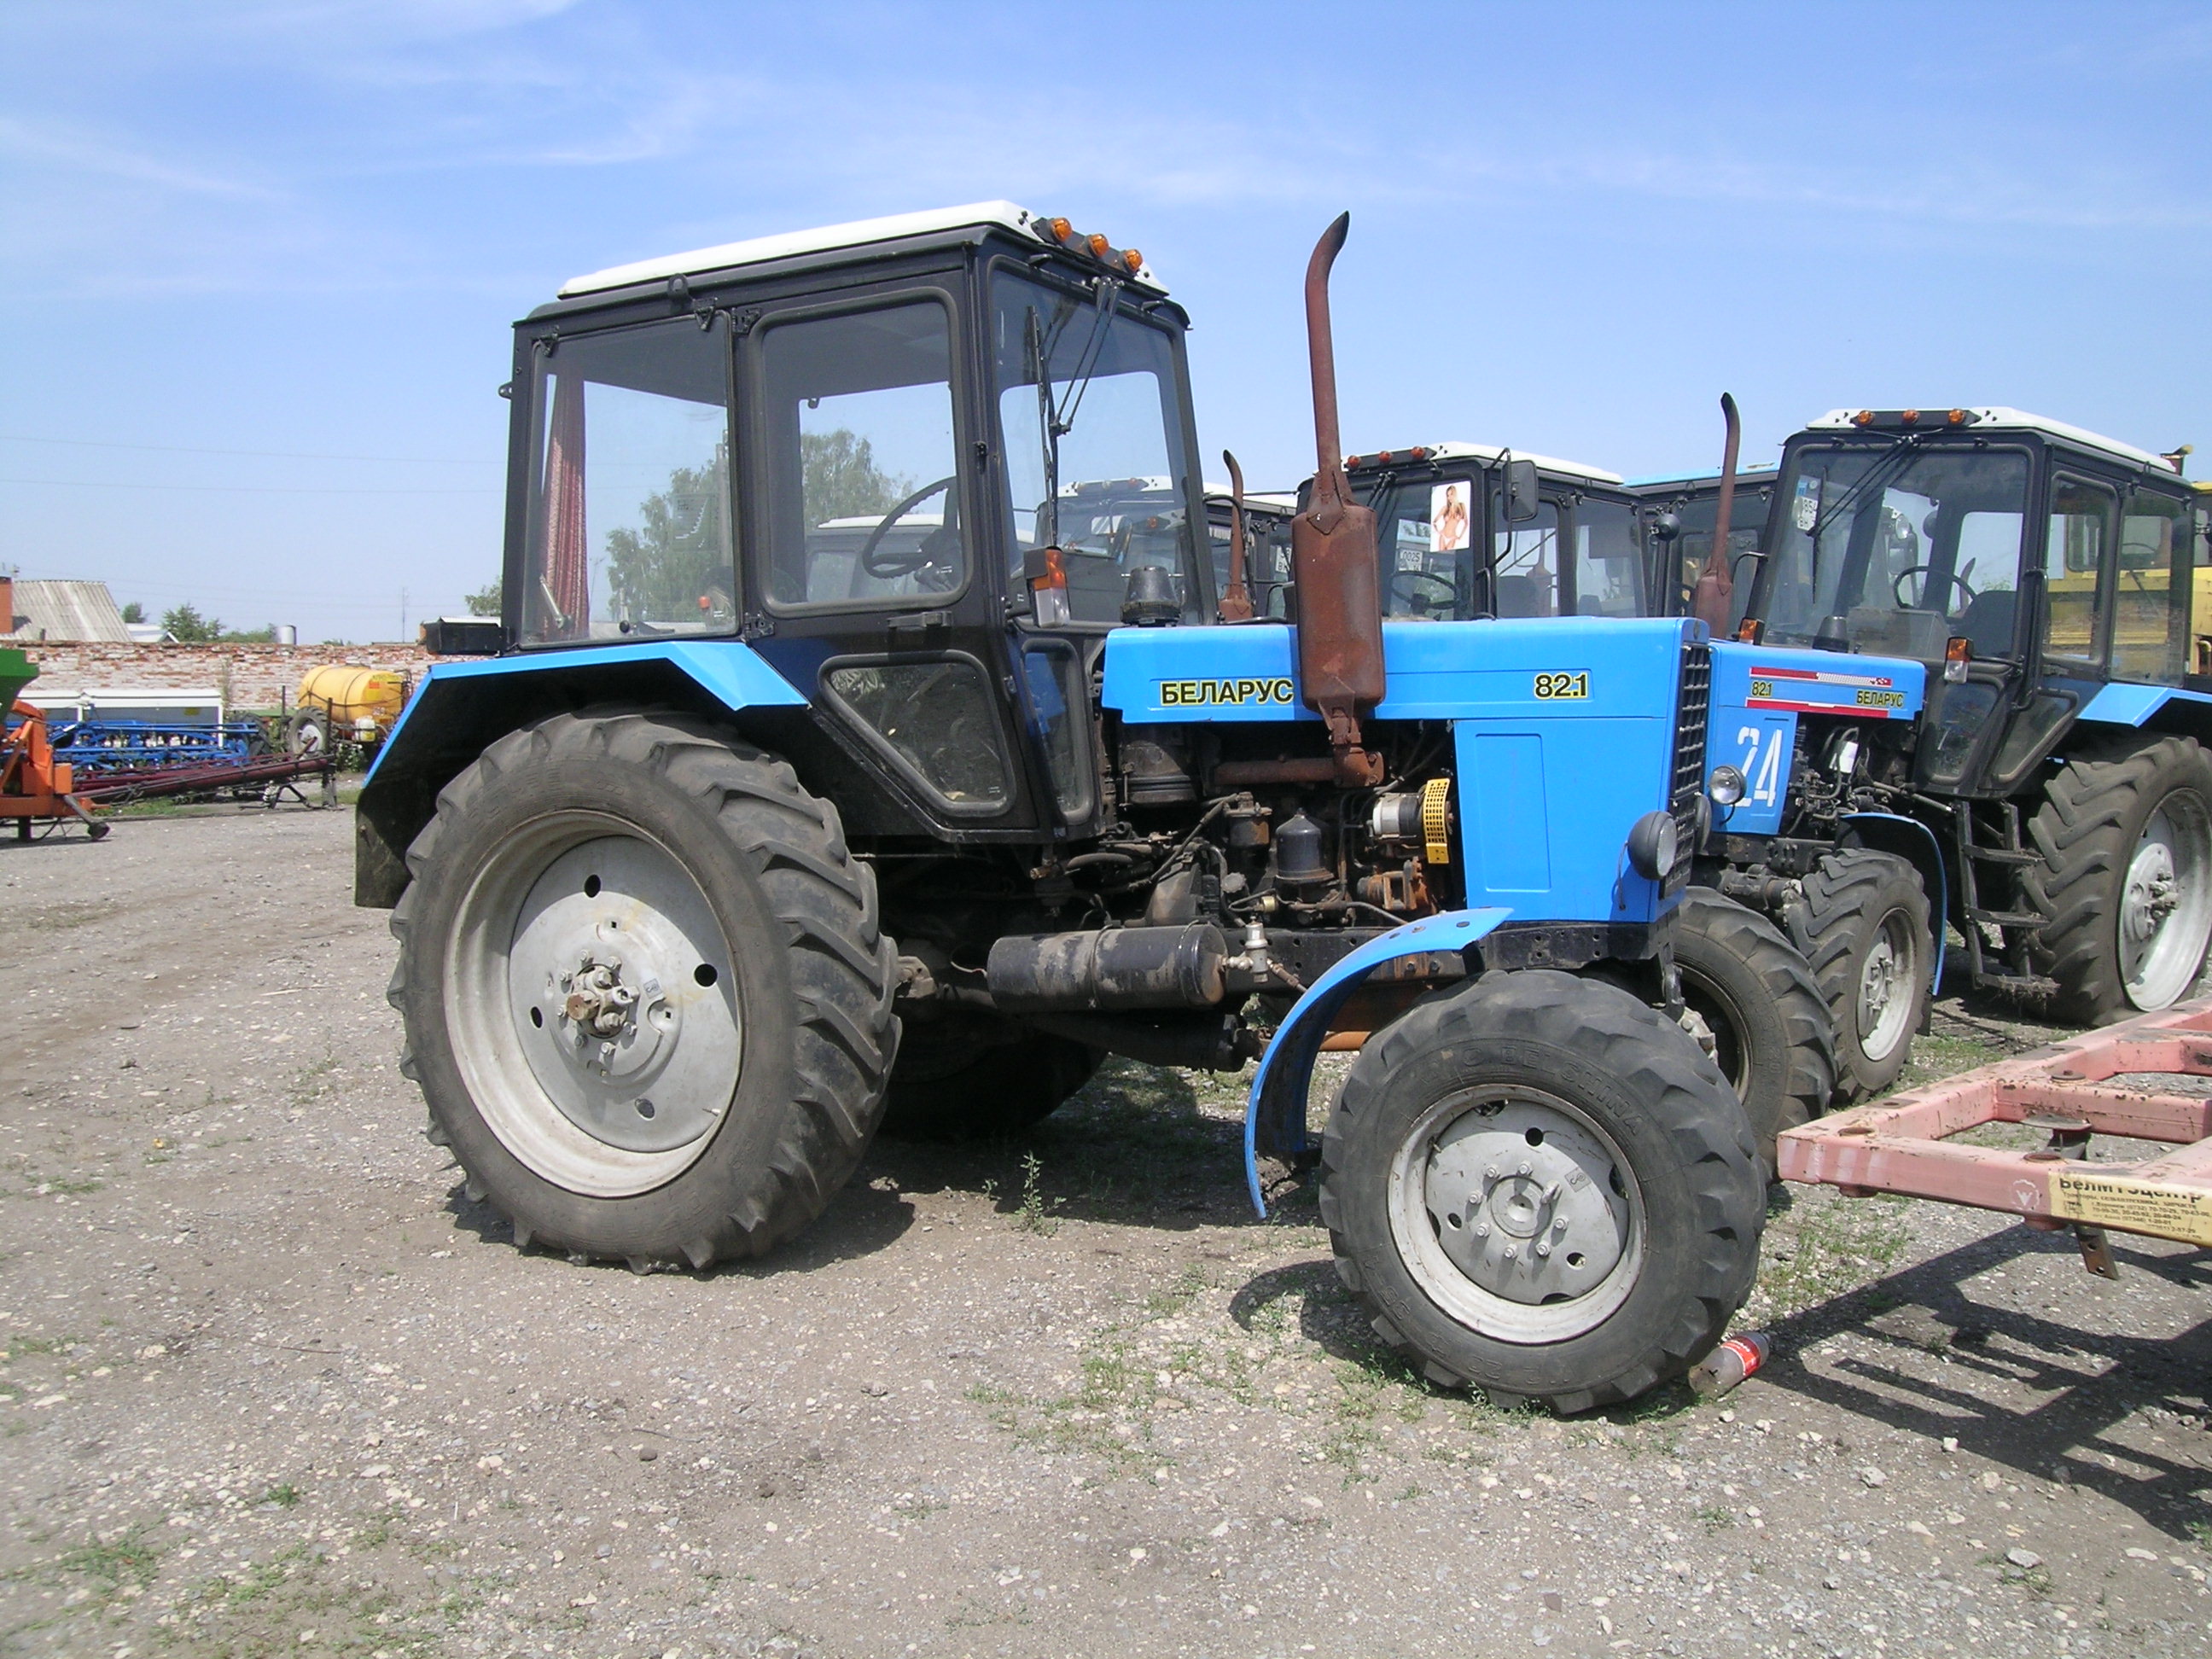 Продам Б/У трактор Беларус МТЗ - 82.1 В отличном состоянии .